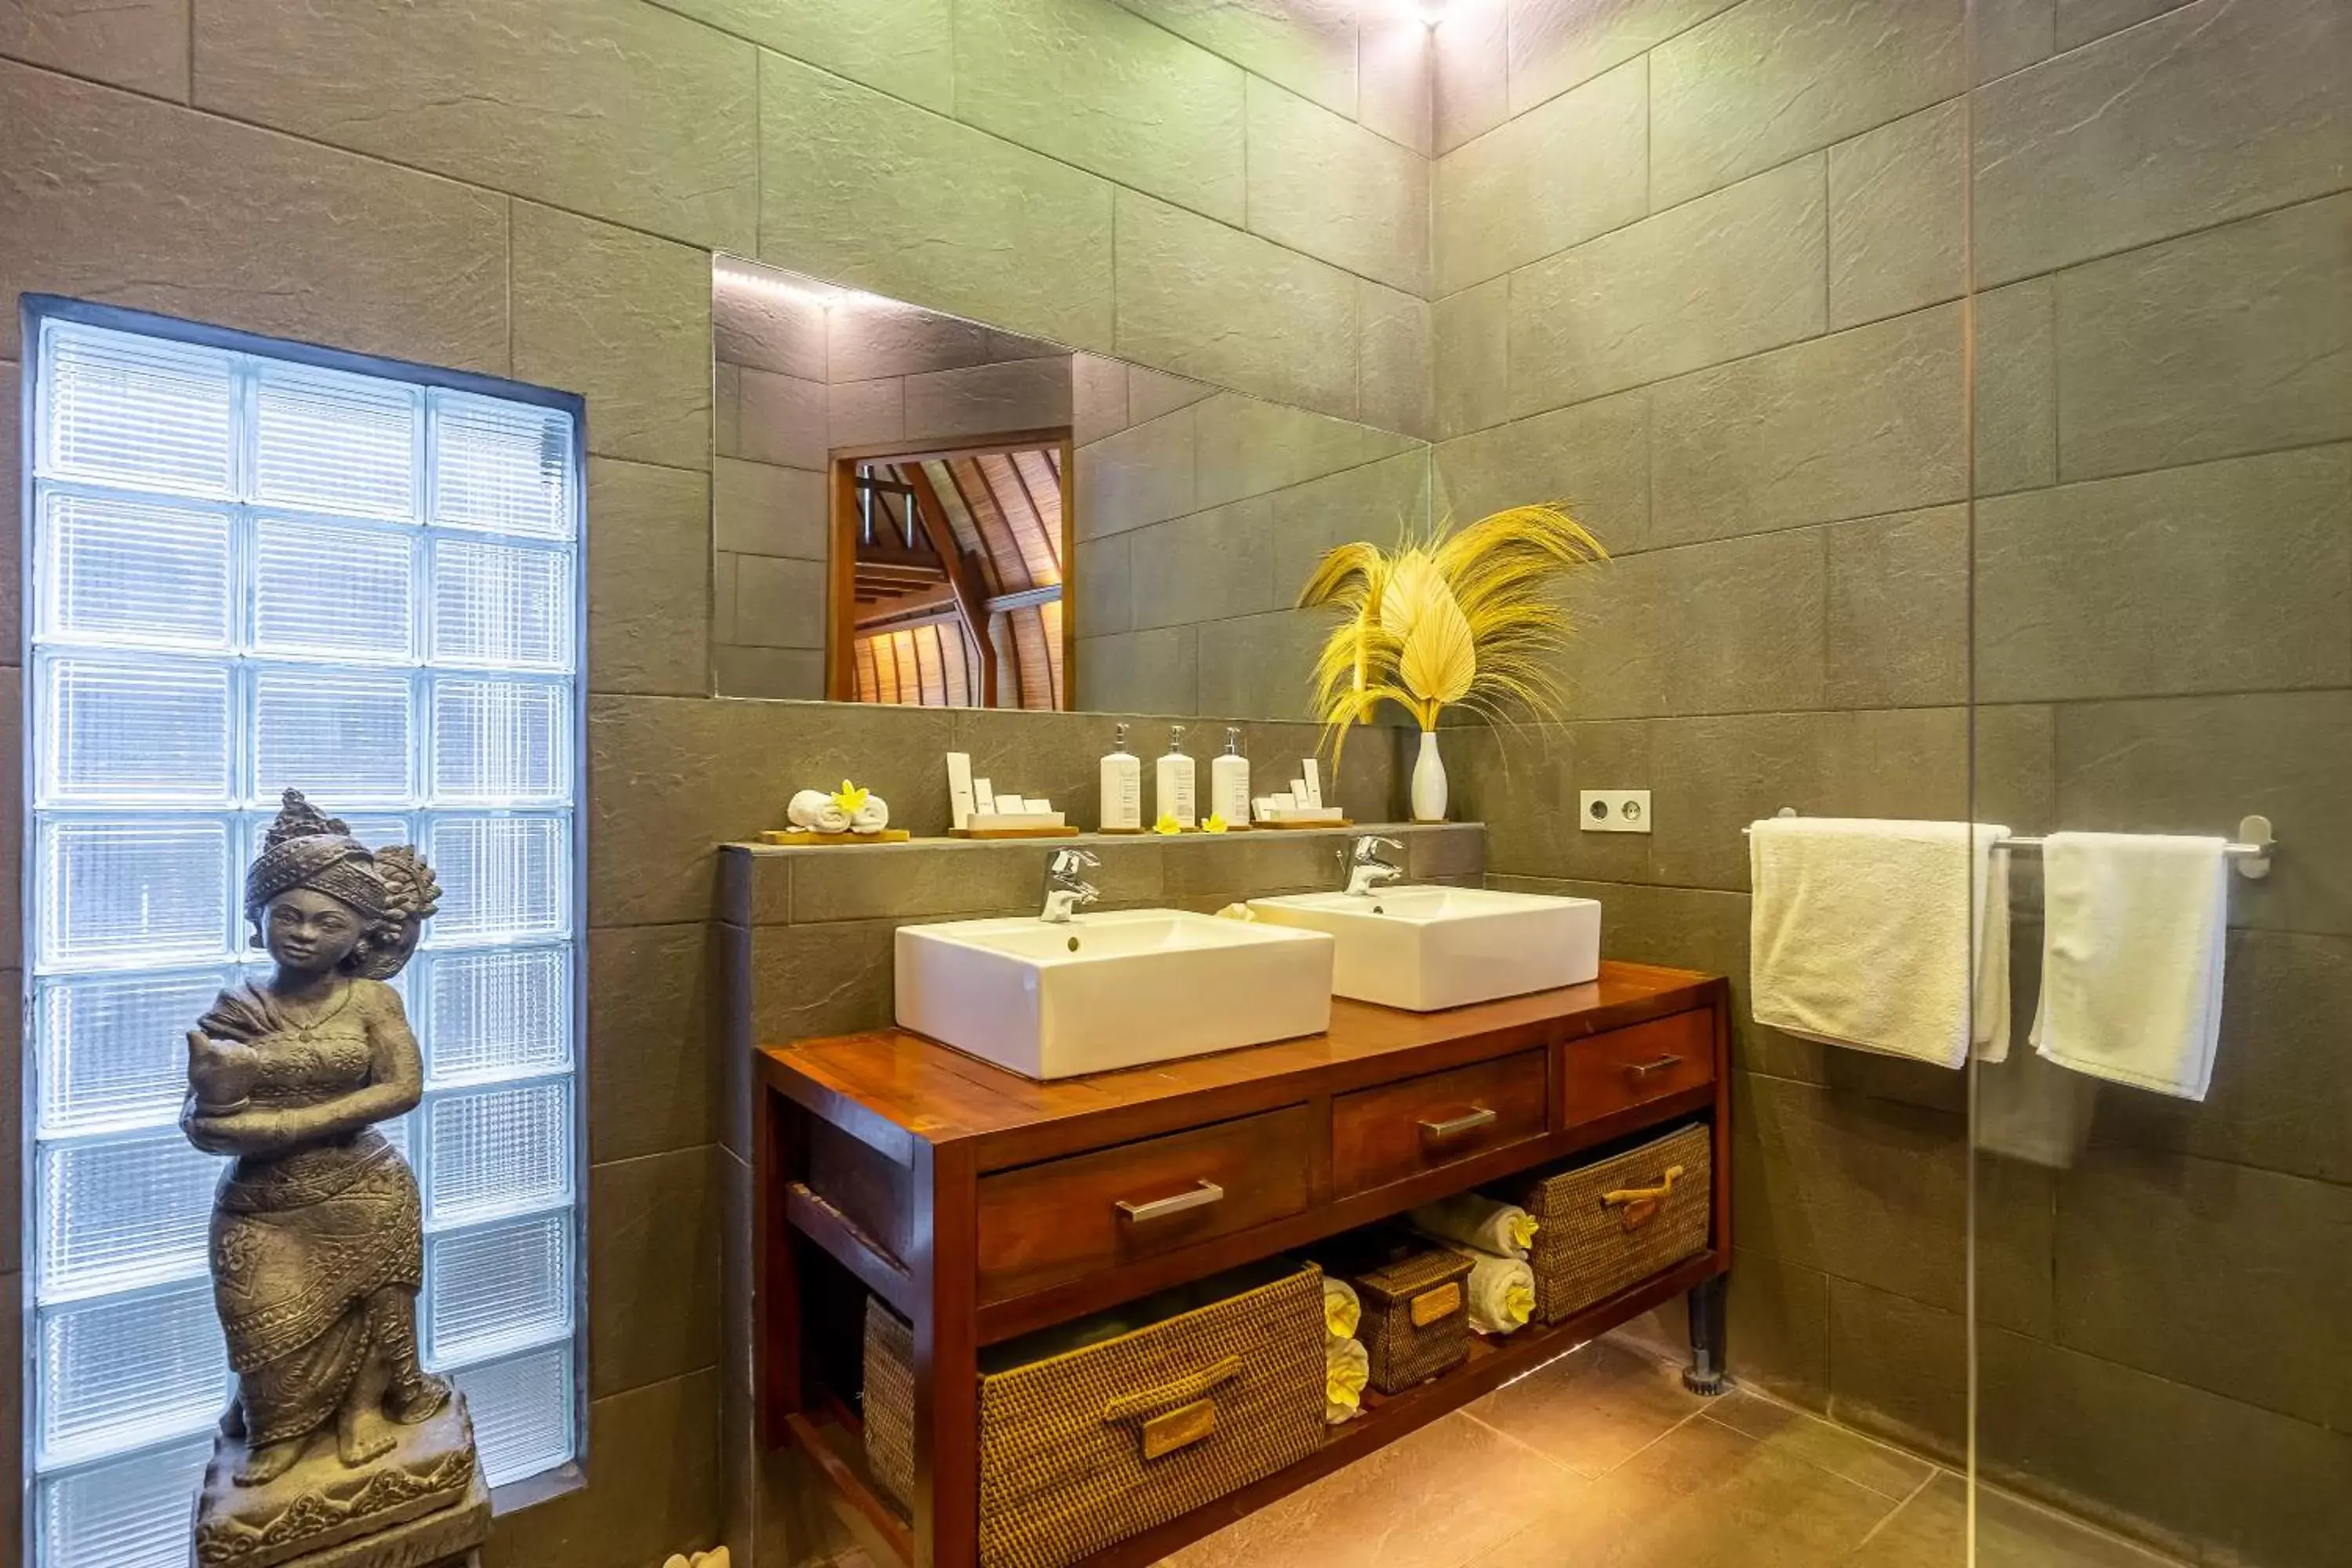 Bathroom in Klumpu Bali Resort